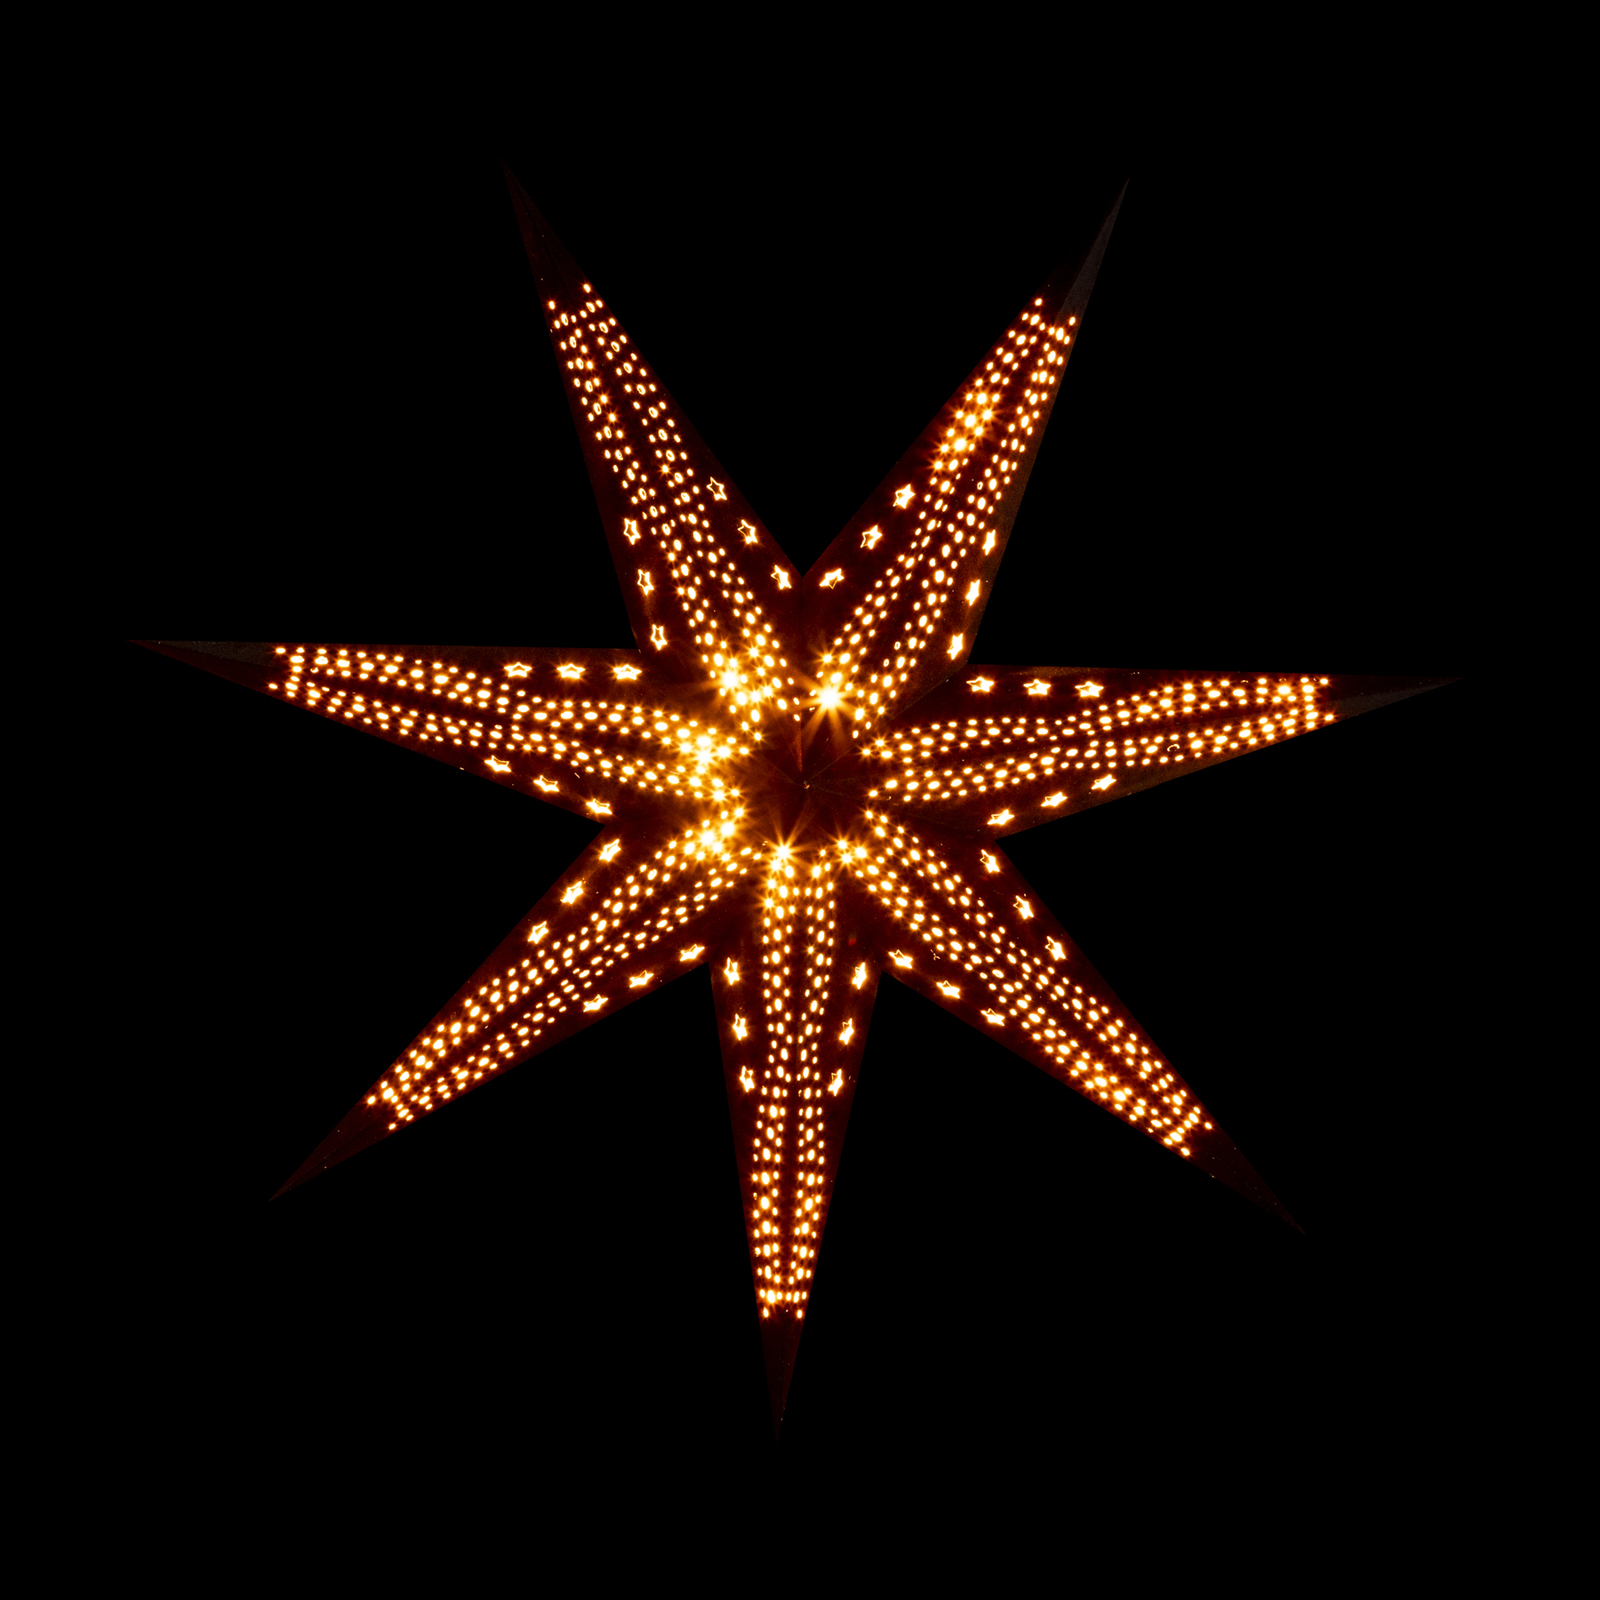 Sterntaler Samt paper star, Ø 75 cm black